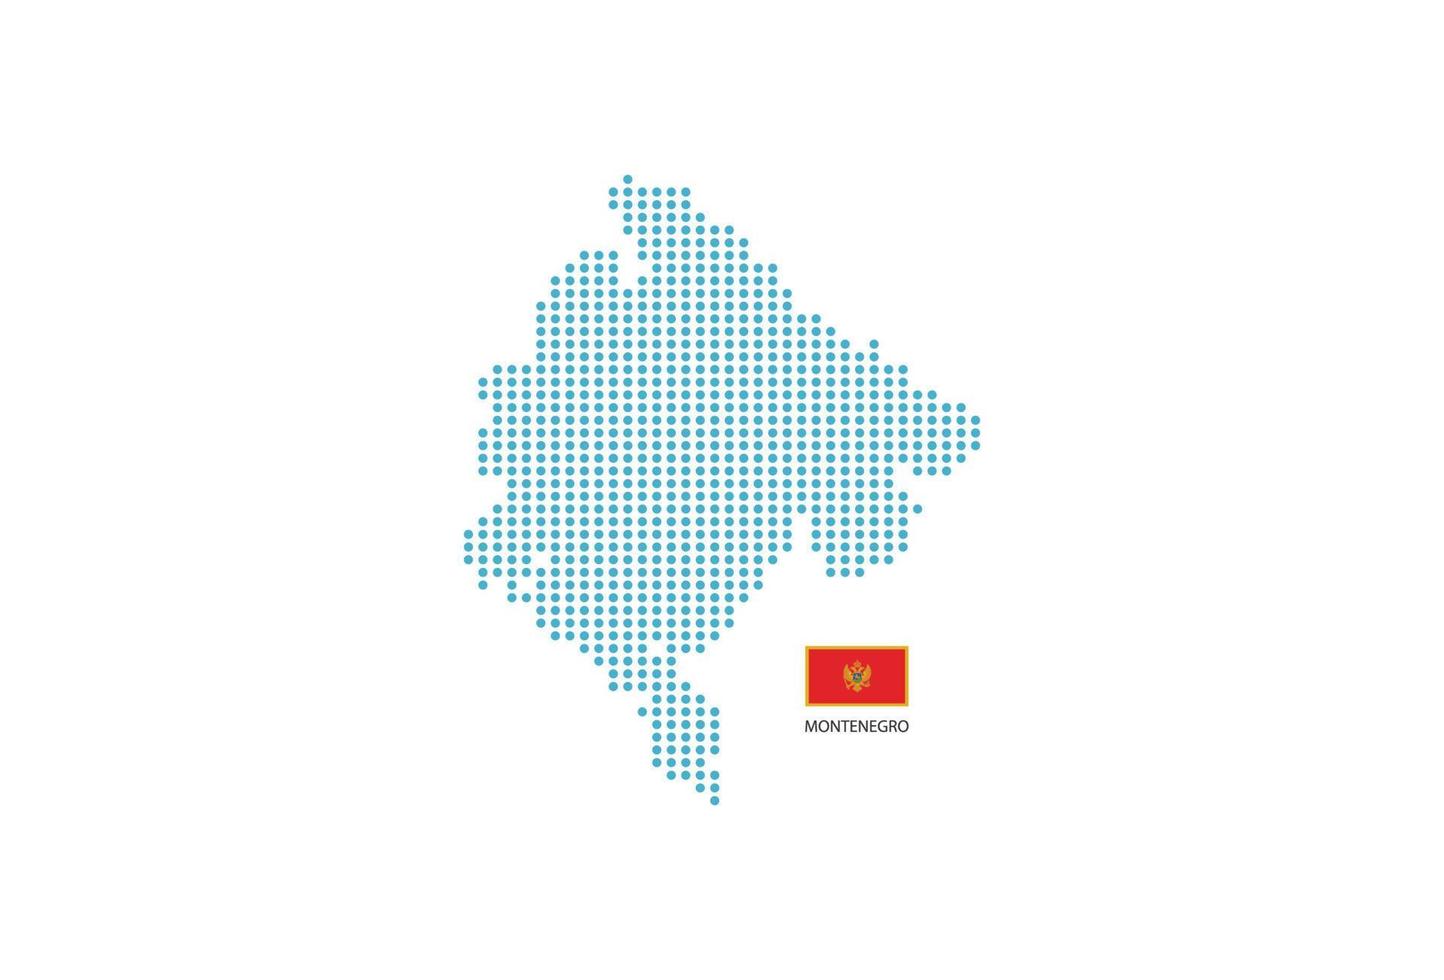 círculo azul de diseño de mapa de montenegro, fondo blanco con bandera de montenegro. vector